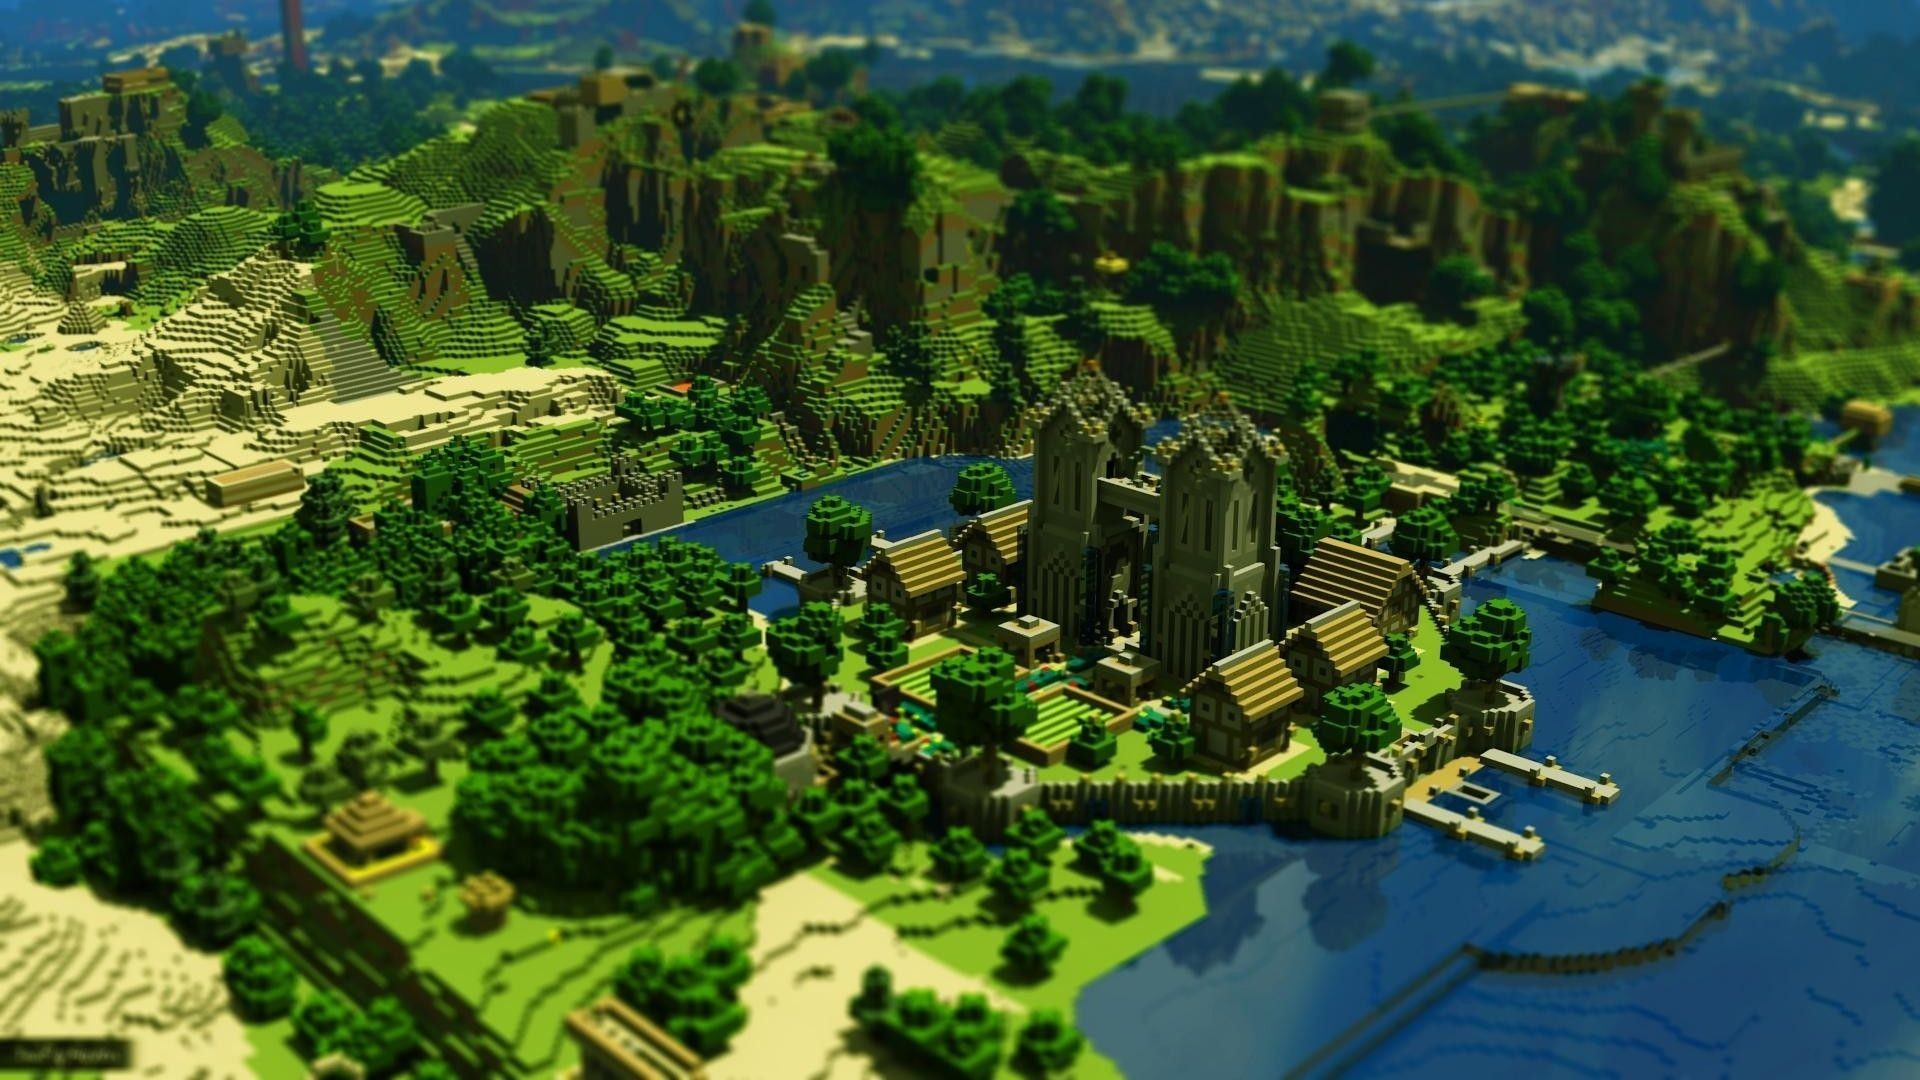 Epic Minecraft Background Image